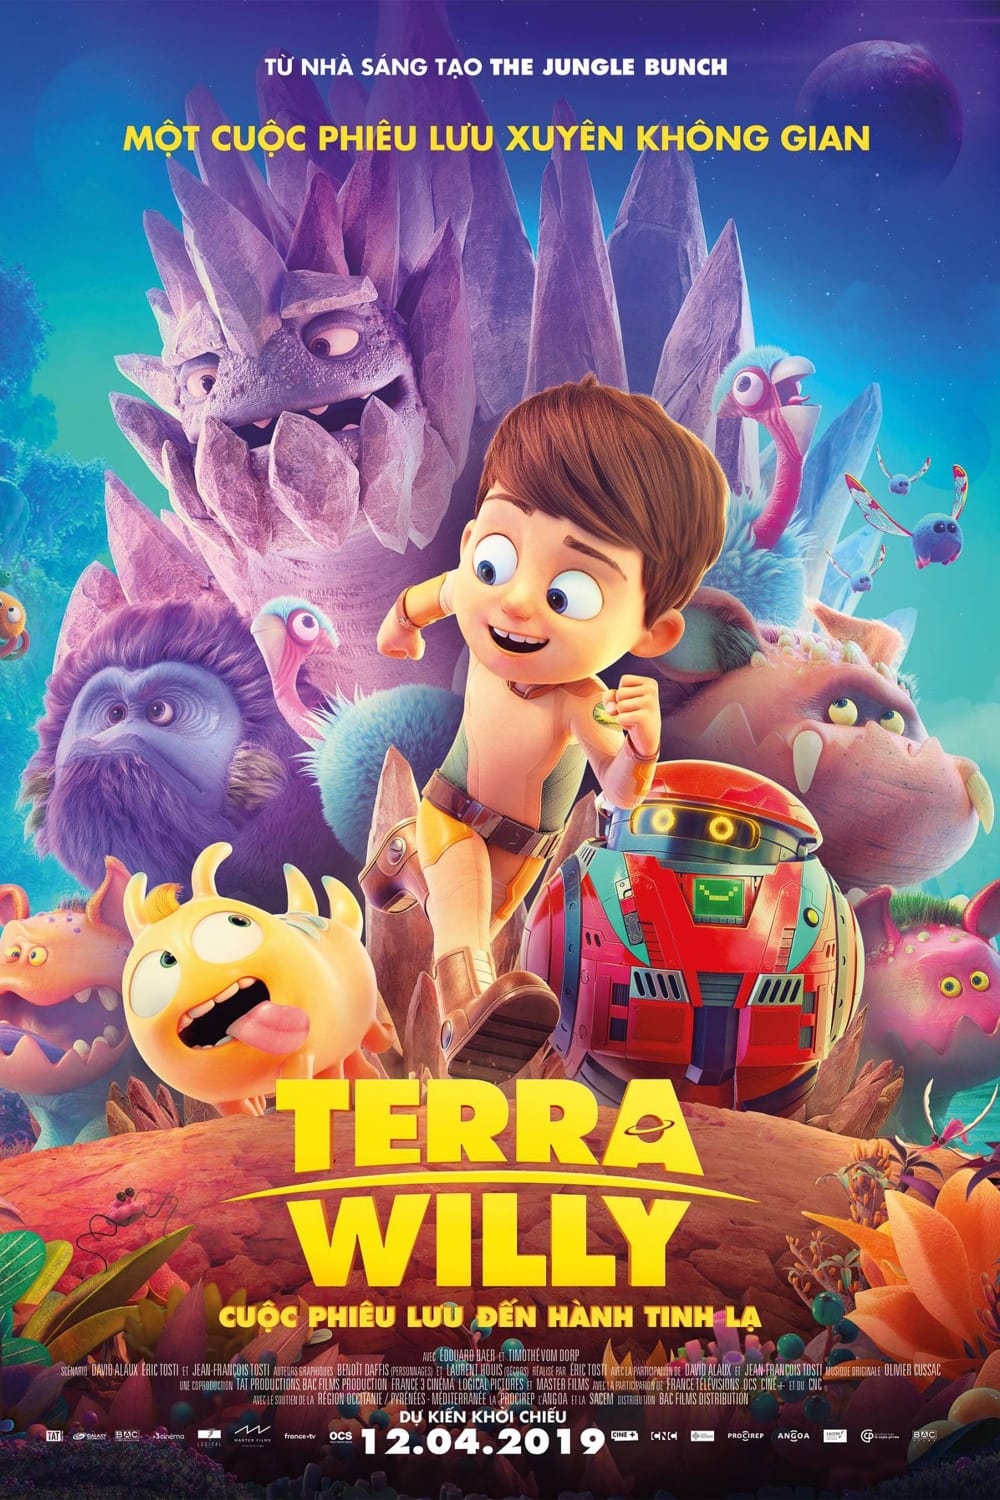 Terra Willy: Cuộc Phiêu Lưu Tới Hành Tinh Lạ (Astro Kid) [2019]